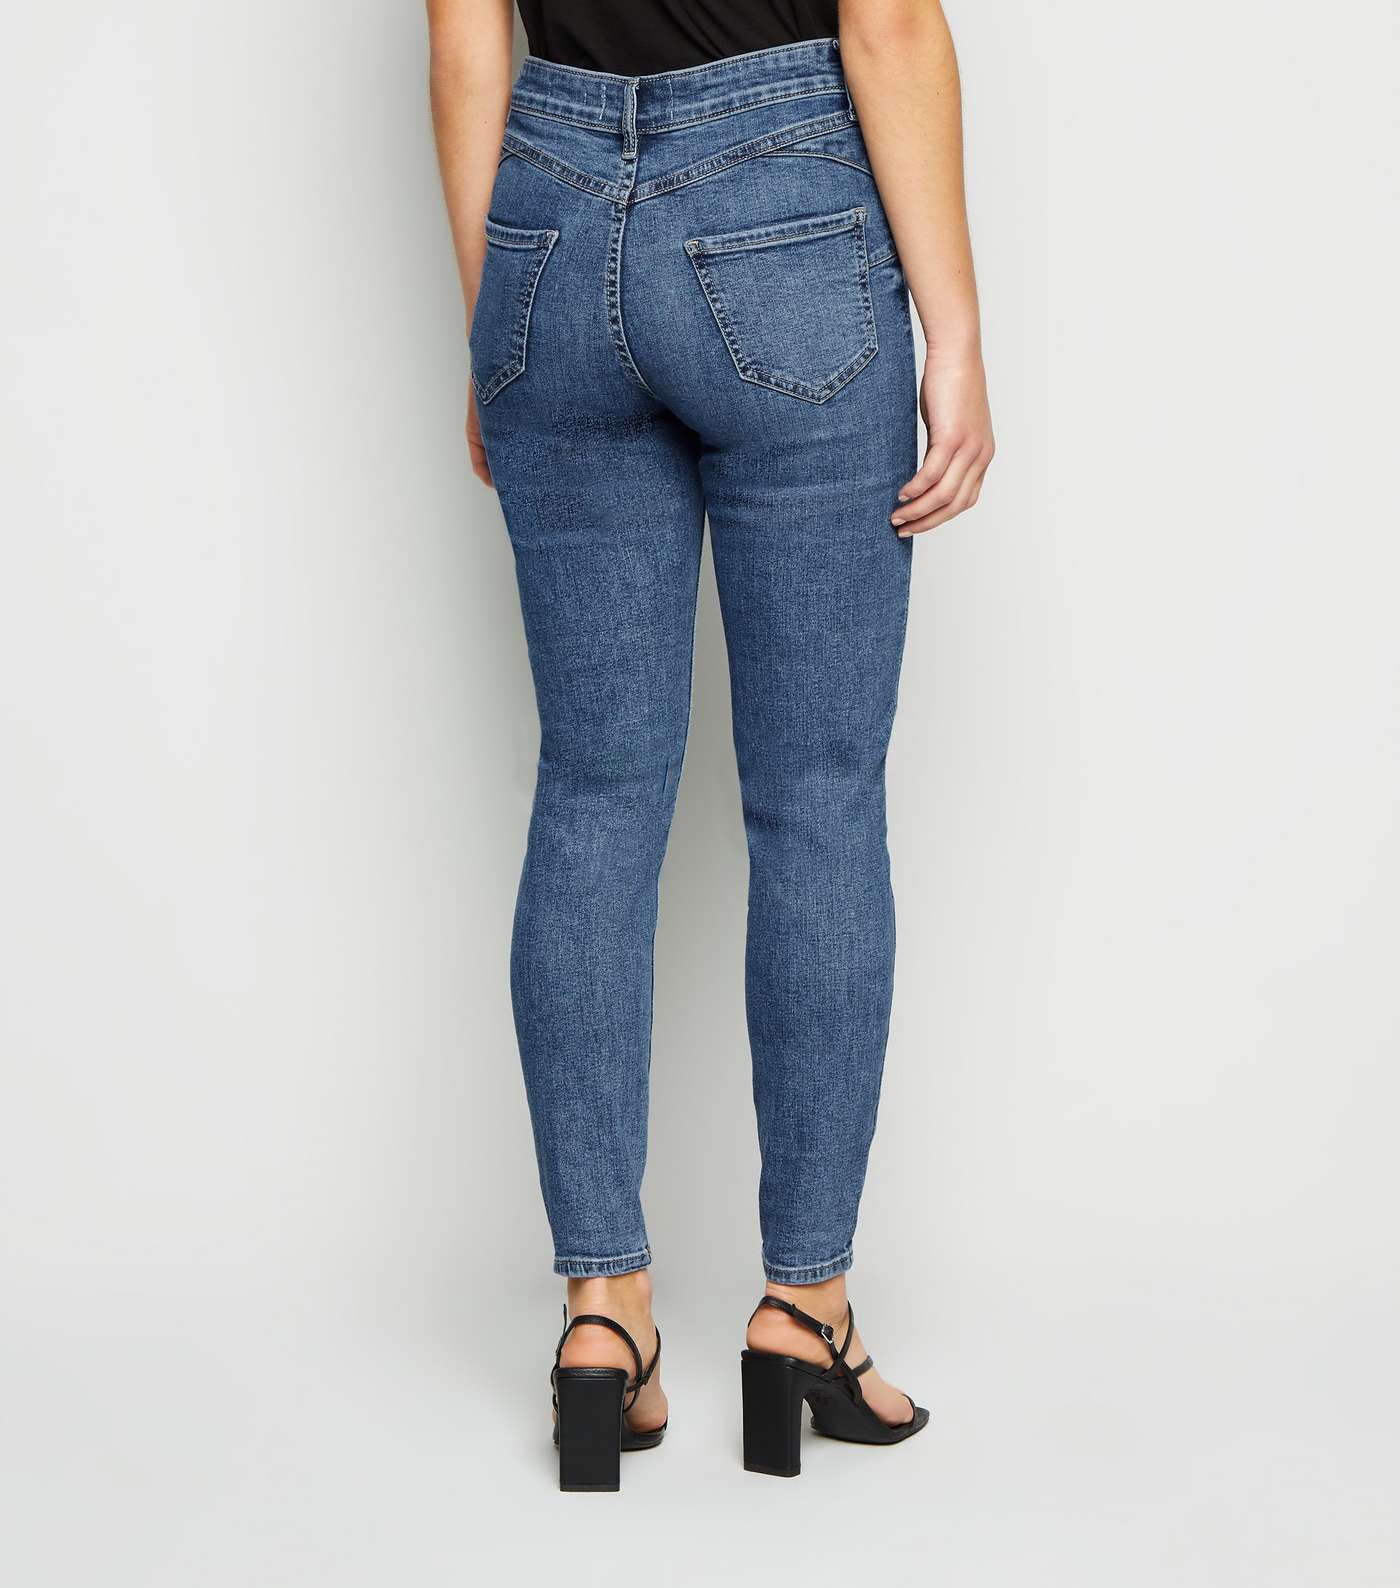 Petite Blue 'Lift & Shape' Skinny Jeans Image 3